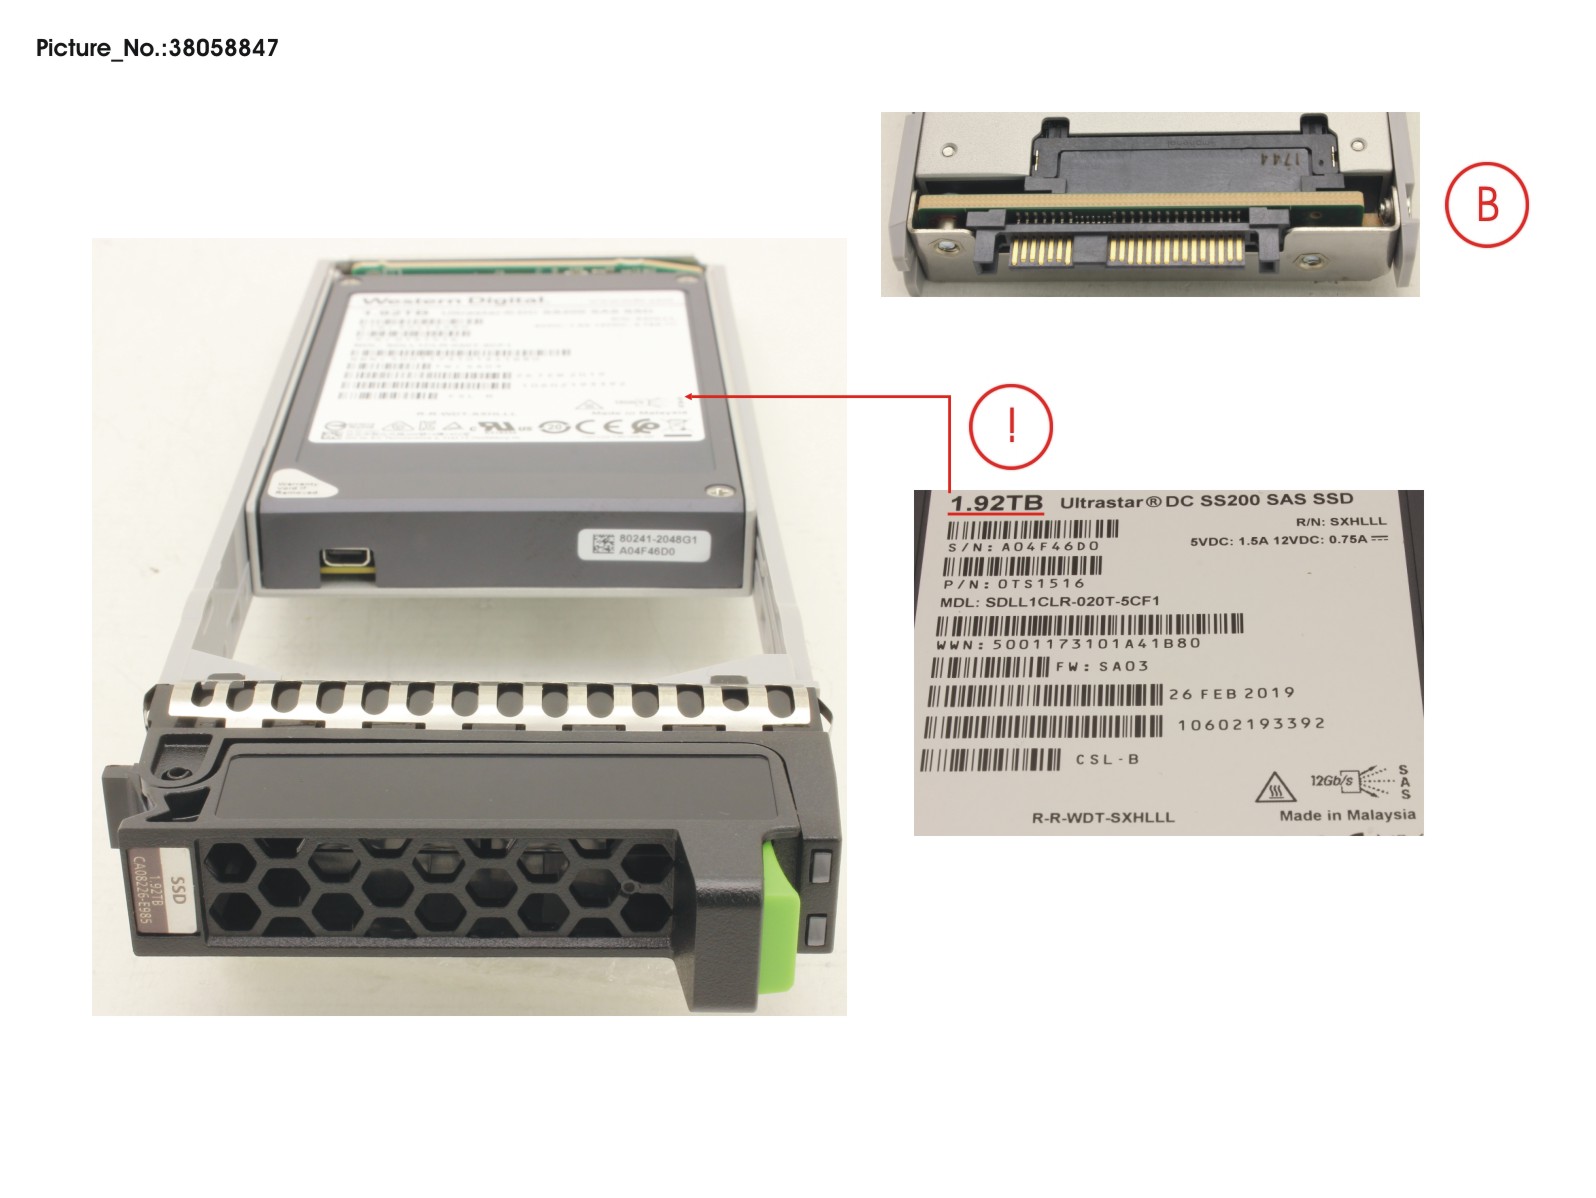 JX40 S2 MLC SSD 1.92TB 1DWPD SPARE